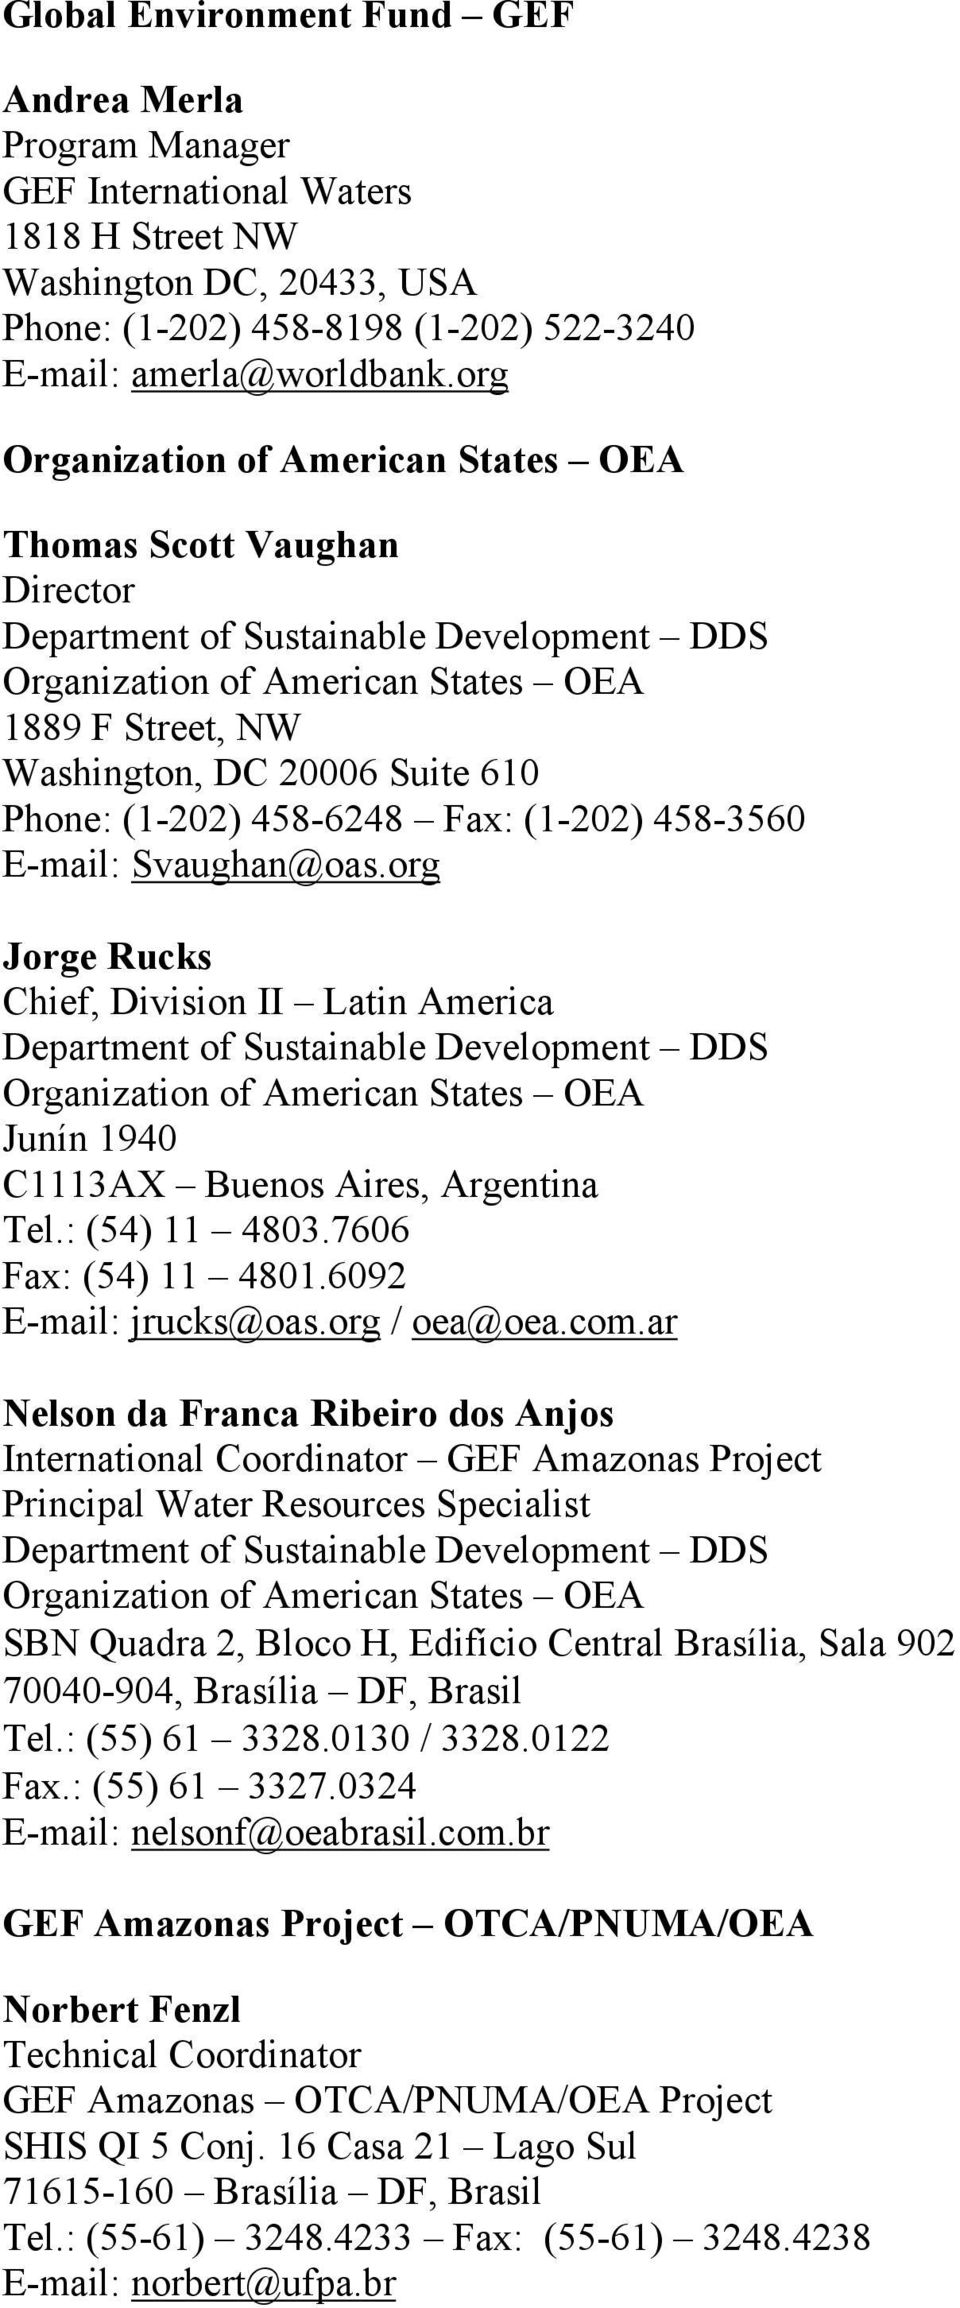 org Jorge Rucks Chief, Division II Latin America Junín 1940 C1113AX Buenos Aires, Argentina Tel.: (54) 11 4803.7606 Fax: (54) 11 4801.6092 E-mail: jrucks@oas.org / oea@oea.com.